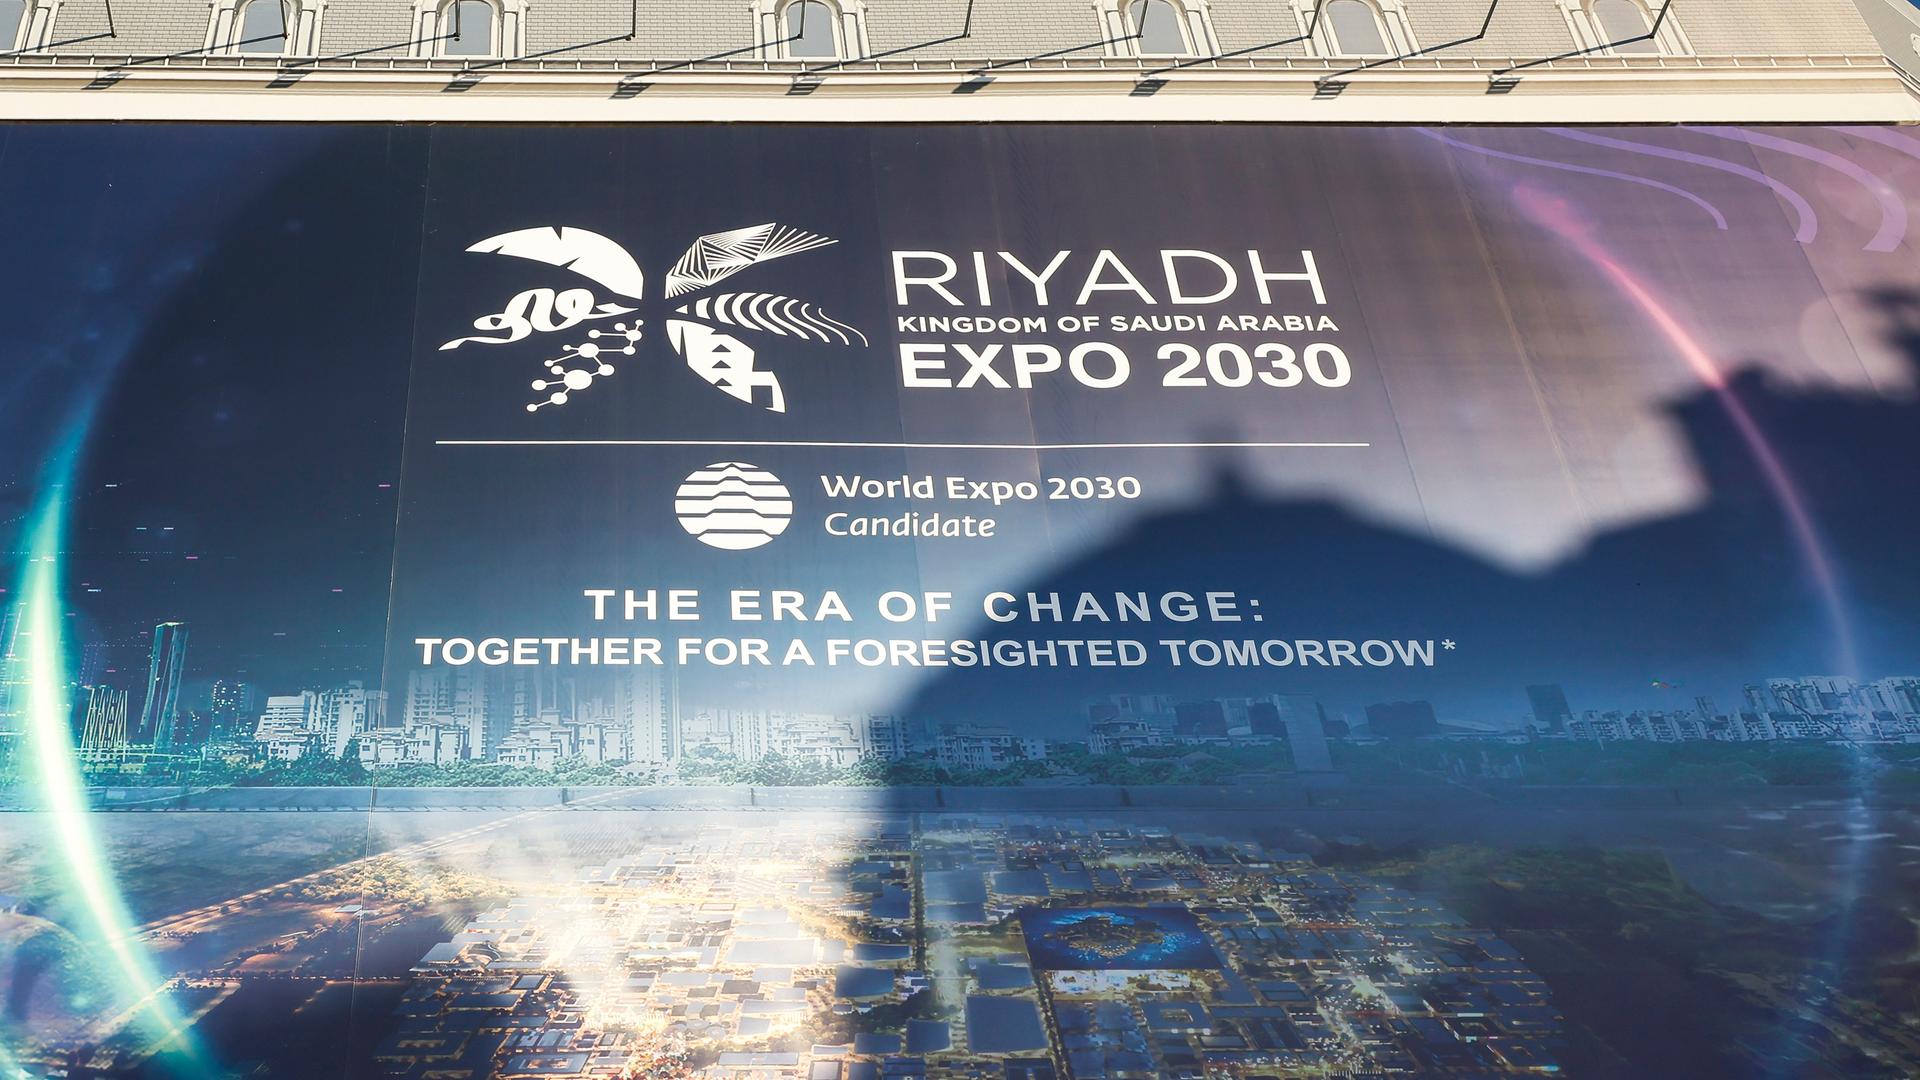 Ein Plakat wirbt für die Expo 2030 in Riad.